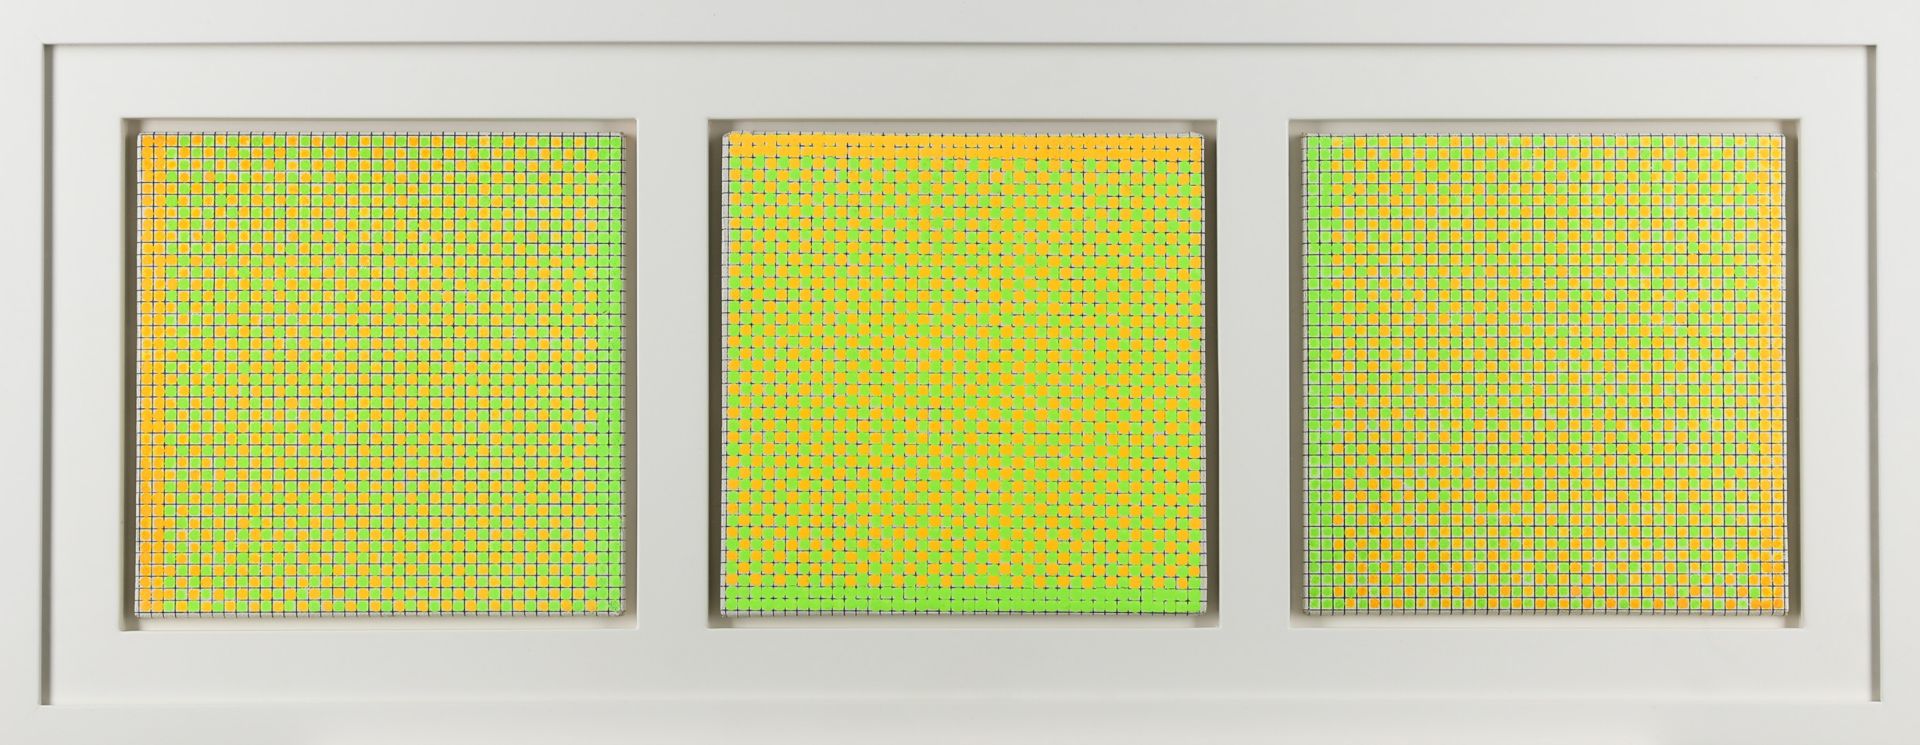 Kuno Gonschior, Serielle Formation/ Triptychon, 1970